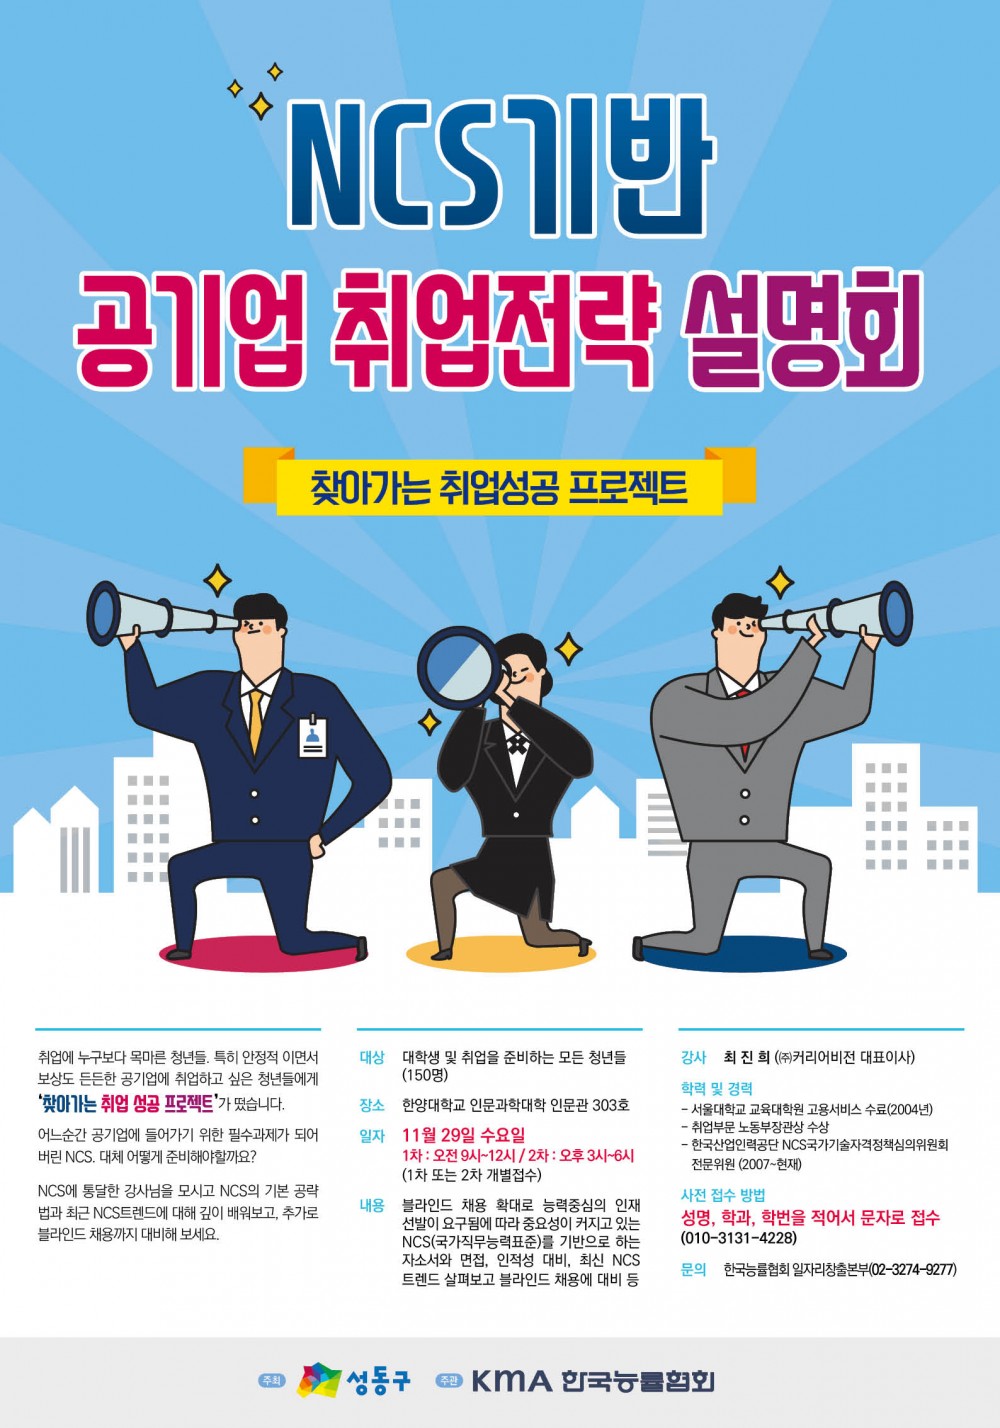 '찾아가는 취업성공 프로젝트' 포스터 29일자 (최종)